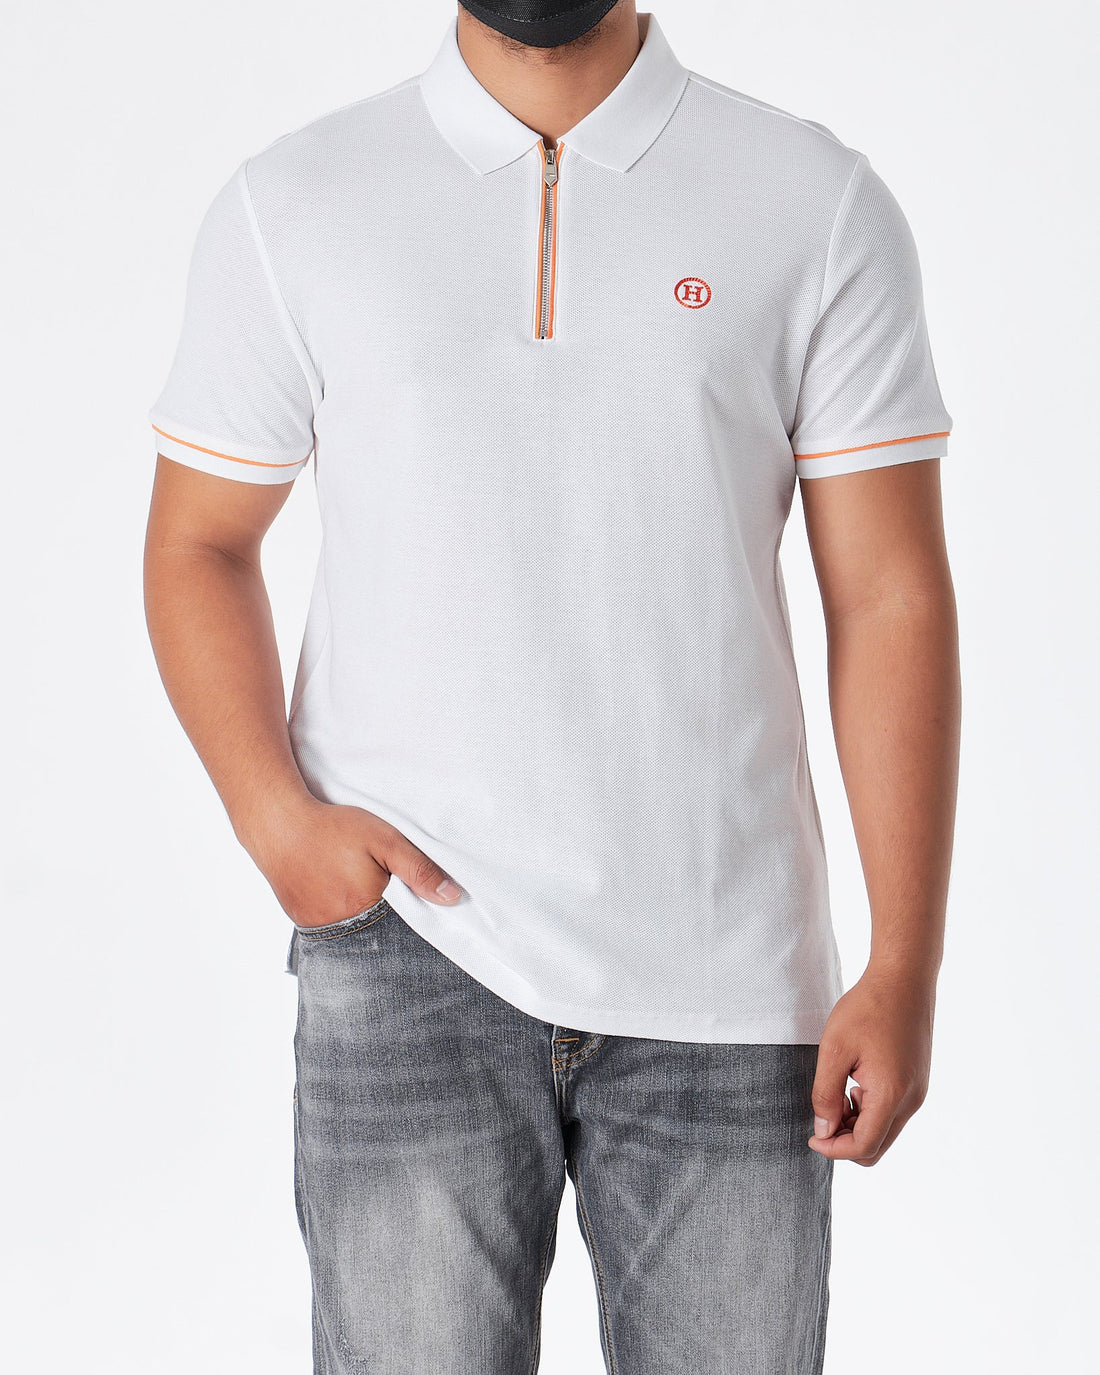 MOI OUTFIT-HM Zip Collar Men Polo Shirt 54.90